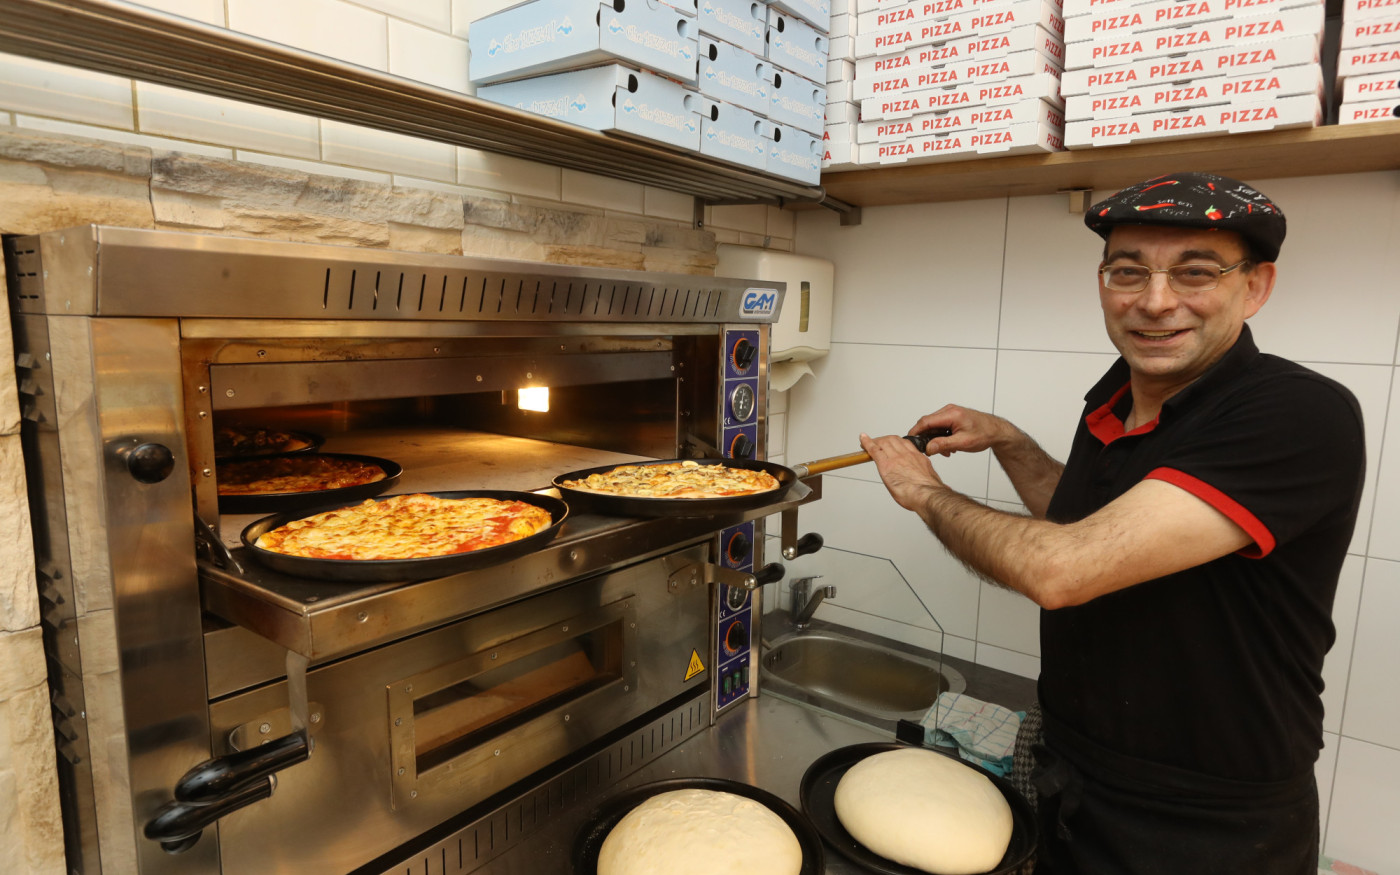 Mario Fiore und seine Gifhorner Pizzeria Piccola Italia - Antipasti und Pizza Calabrese unter den Augen von Sophia Loren und Al Pacino